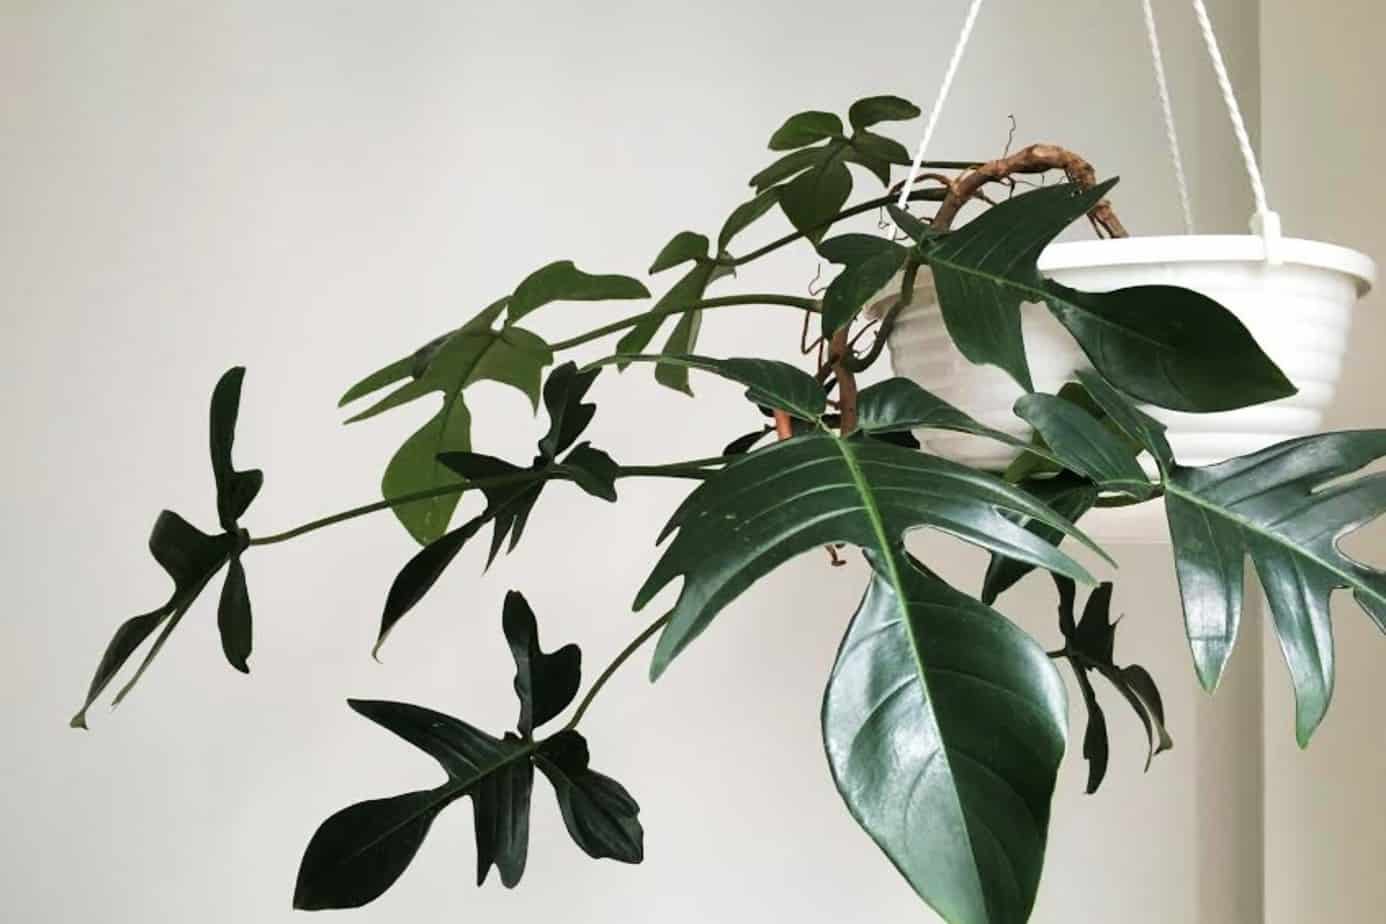 Philodendron pedatum 